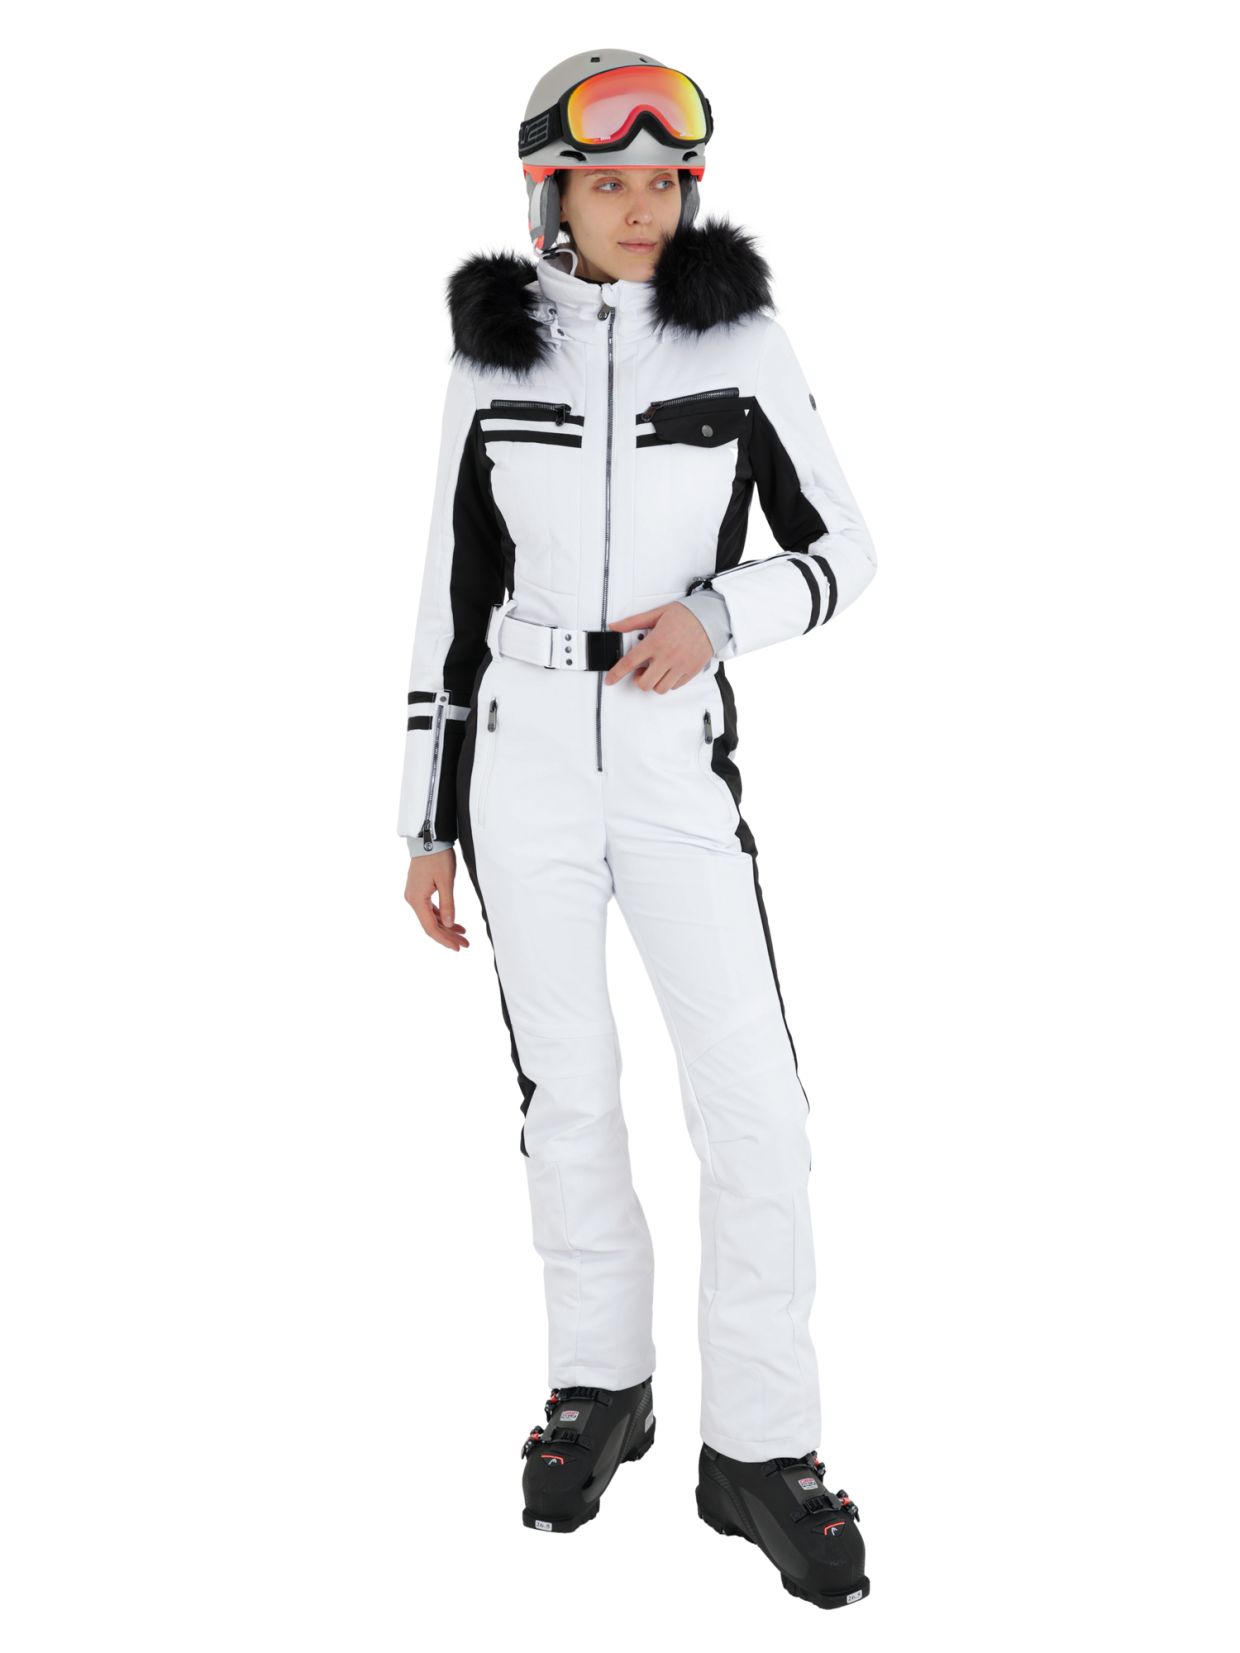 Женские горнолыжные костюмы в Москве – купить лыжный женский костюм в интернет-магазине Predelanet